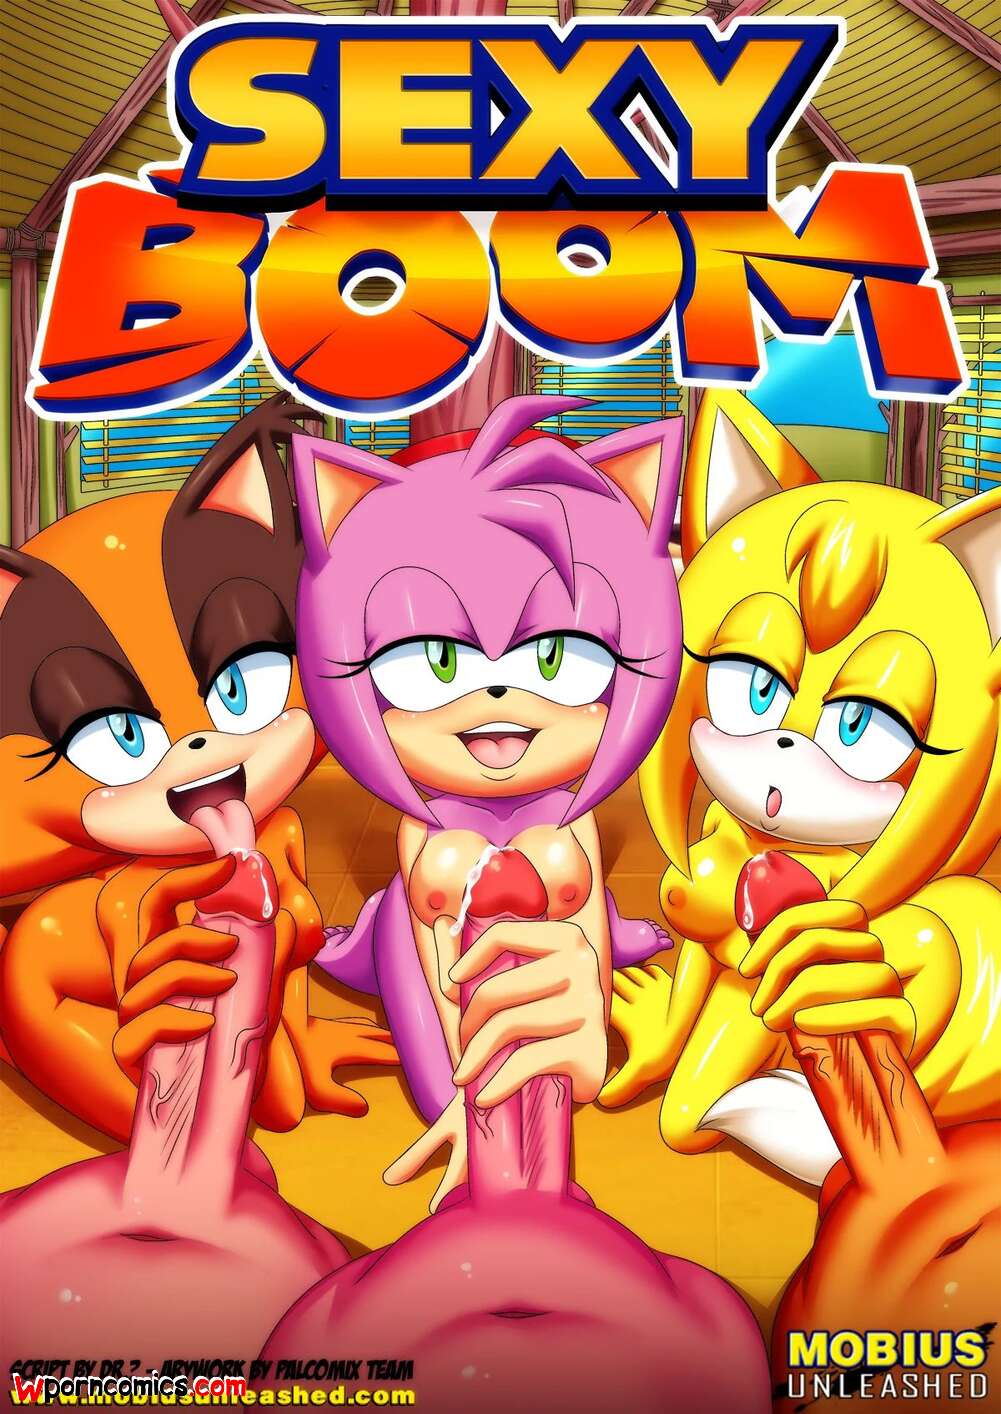 Sexyopan - âœ…ï¸ Porn comic Sexy Boom. Chapter 1. Sonic the Hedgehog. Palcomix. Sex comic  and his friends | Porn comics in English for adults only | sexkomix2.com